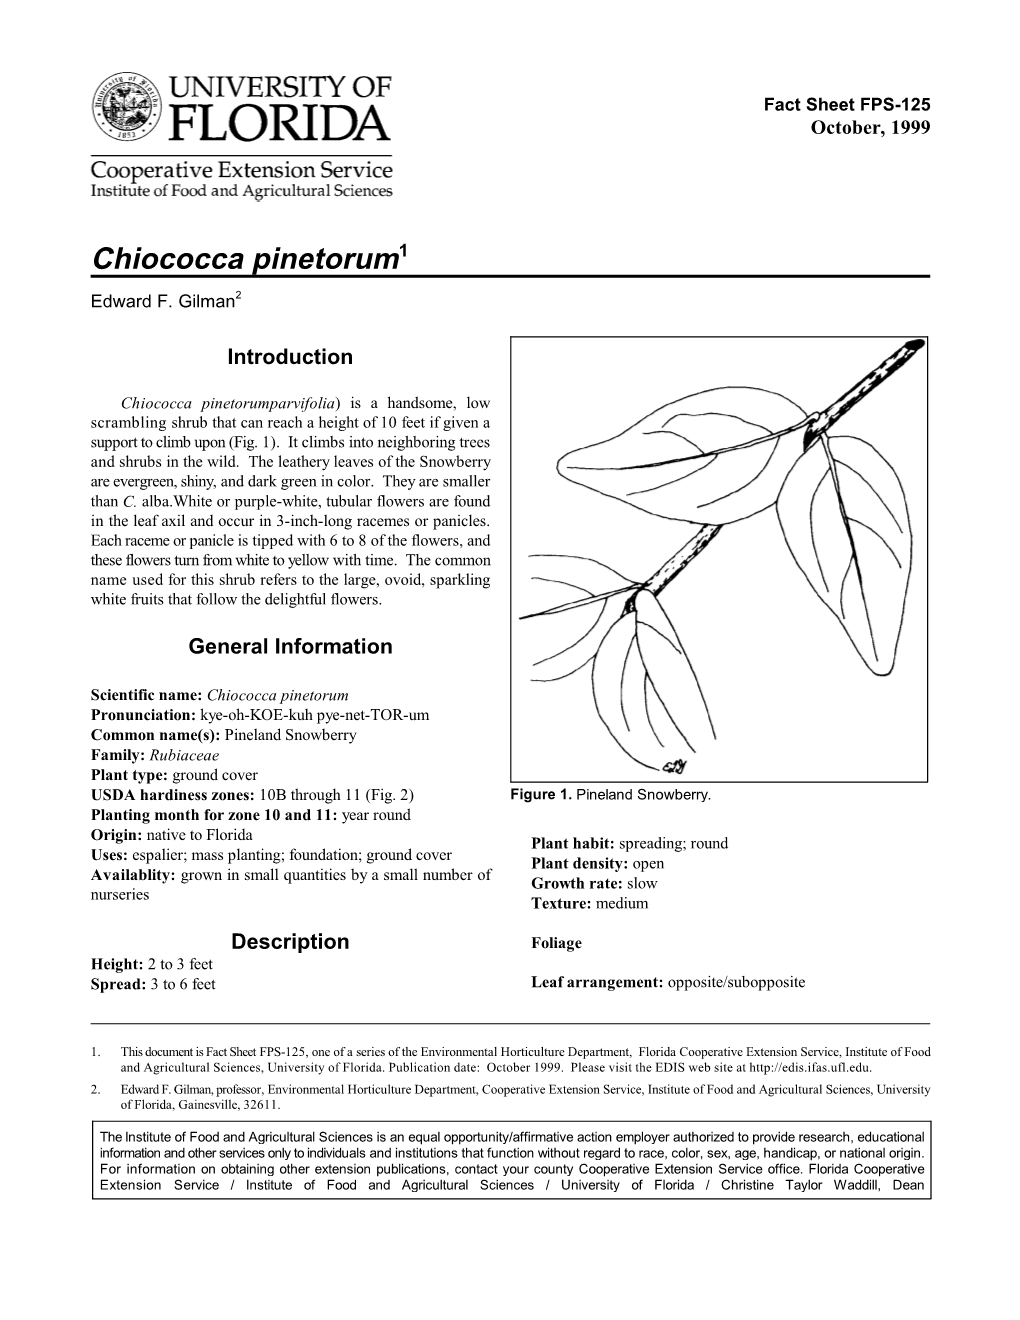 Chiococca Pinetorum1